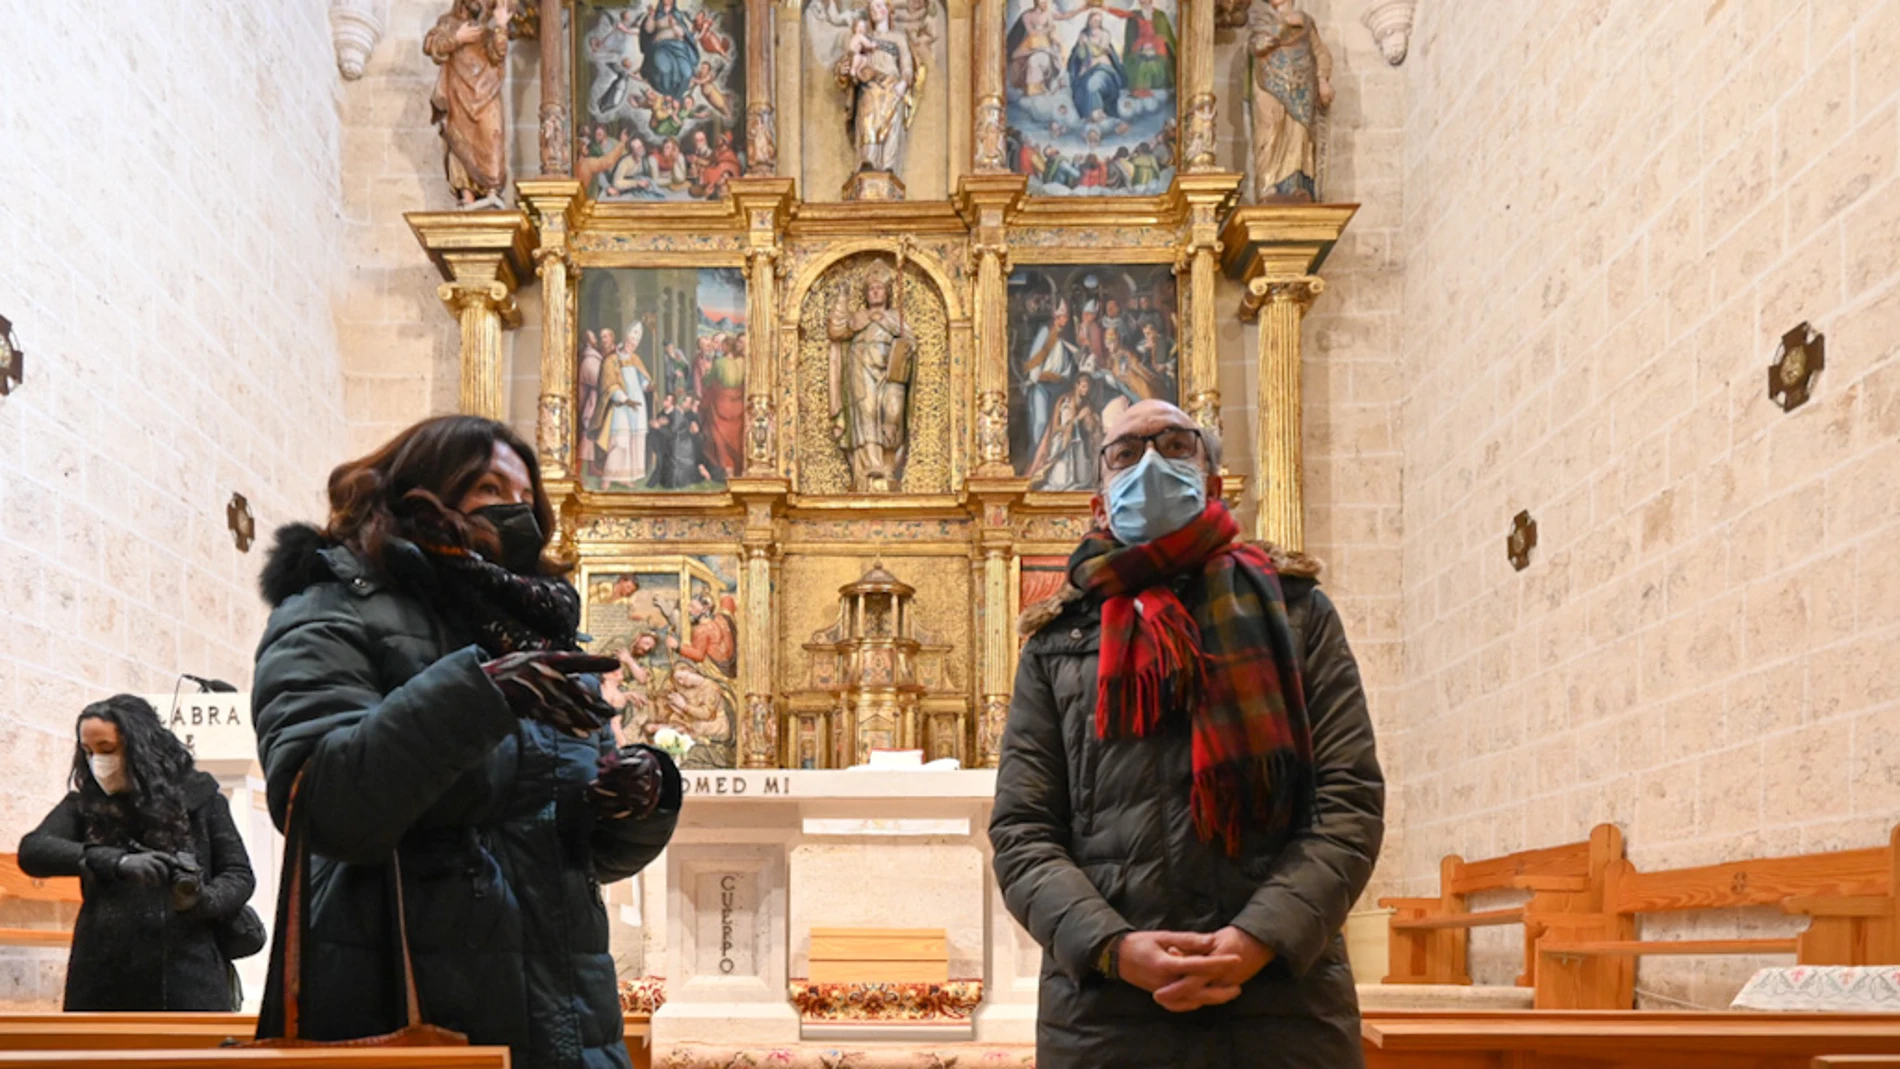 El consejero de Cultura y Turismo, Javier Ortega, presenta las actuaciones realizadas en el retablo de la iglesia de San Nicolás de Bari